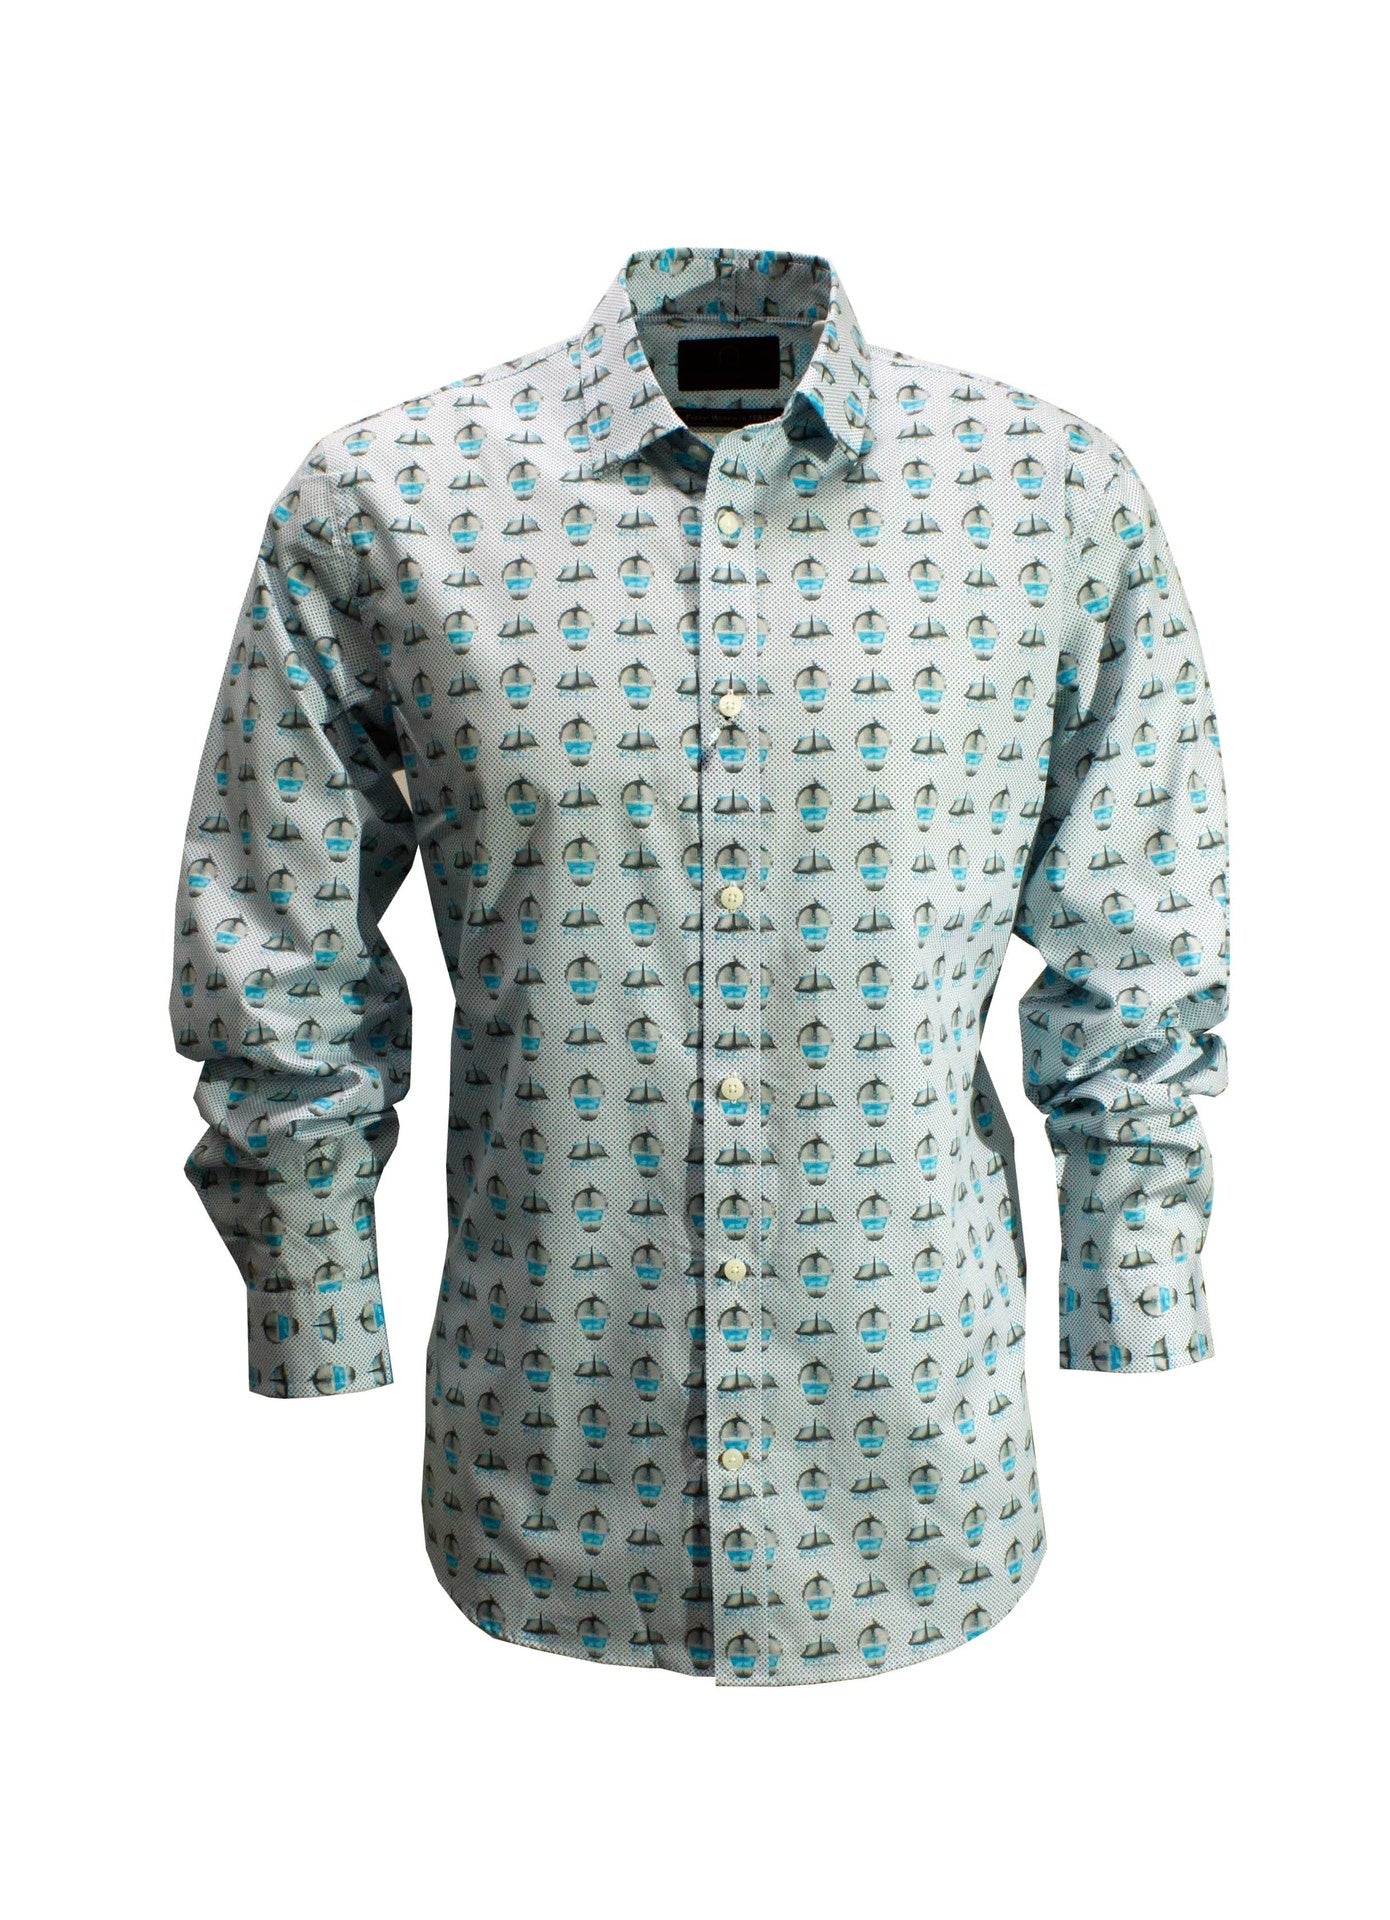 Cutler William Long Sleeve shirt CS20540